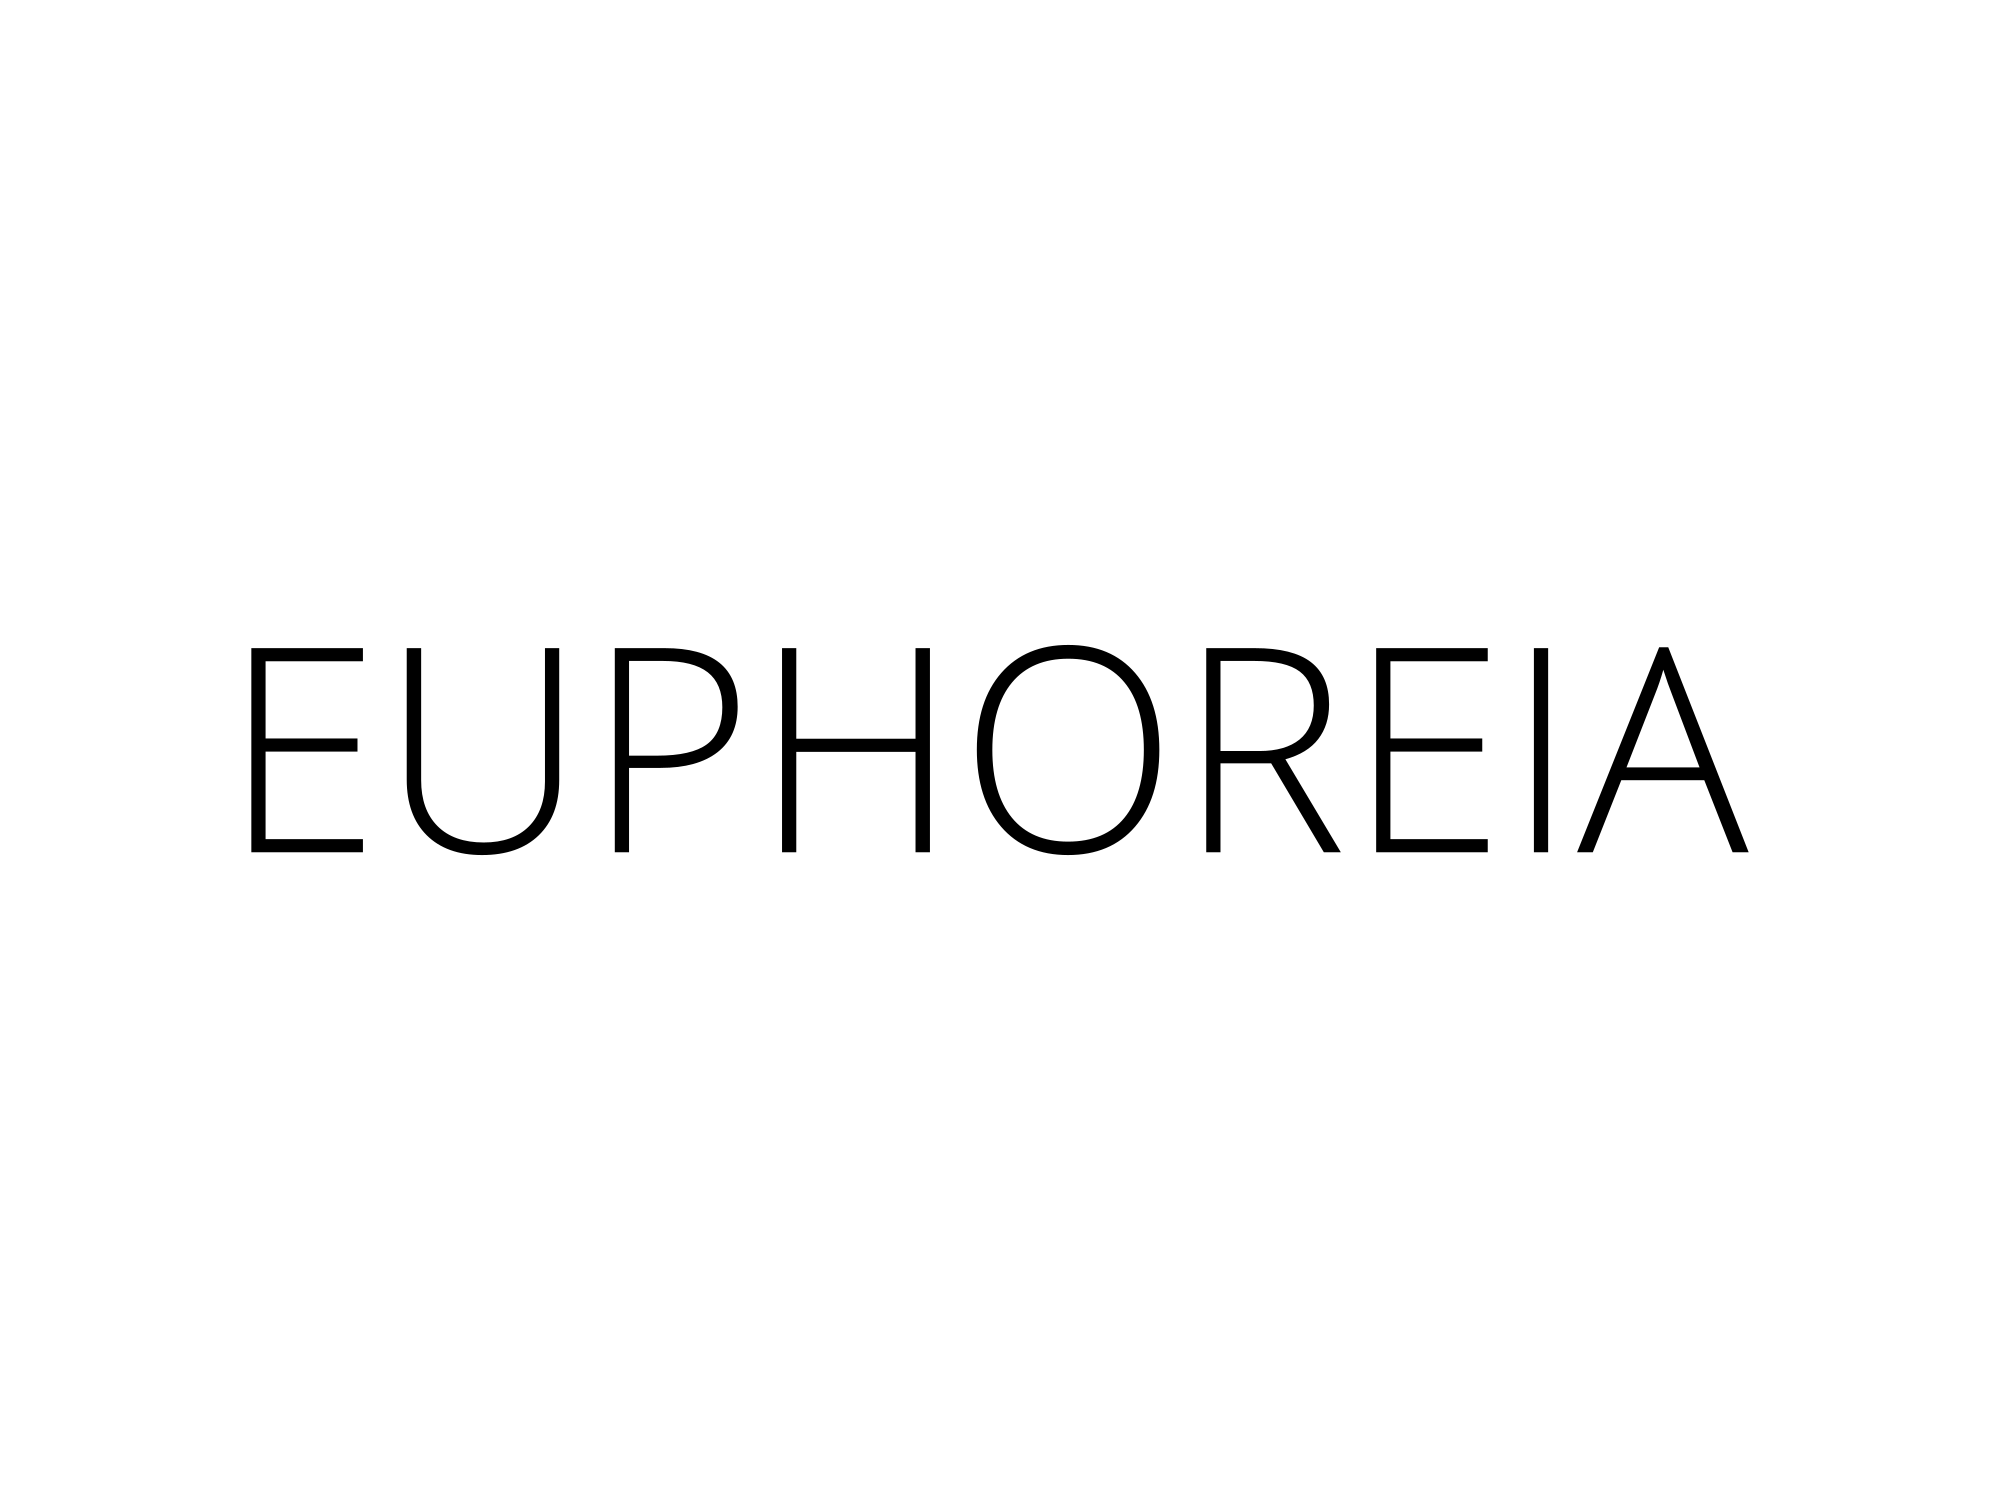 Euphoreia